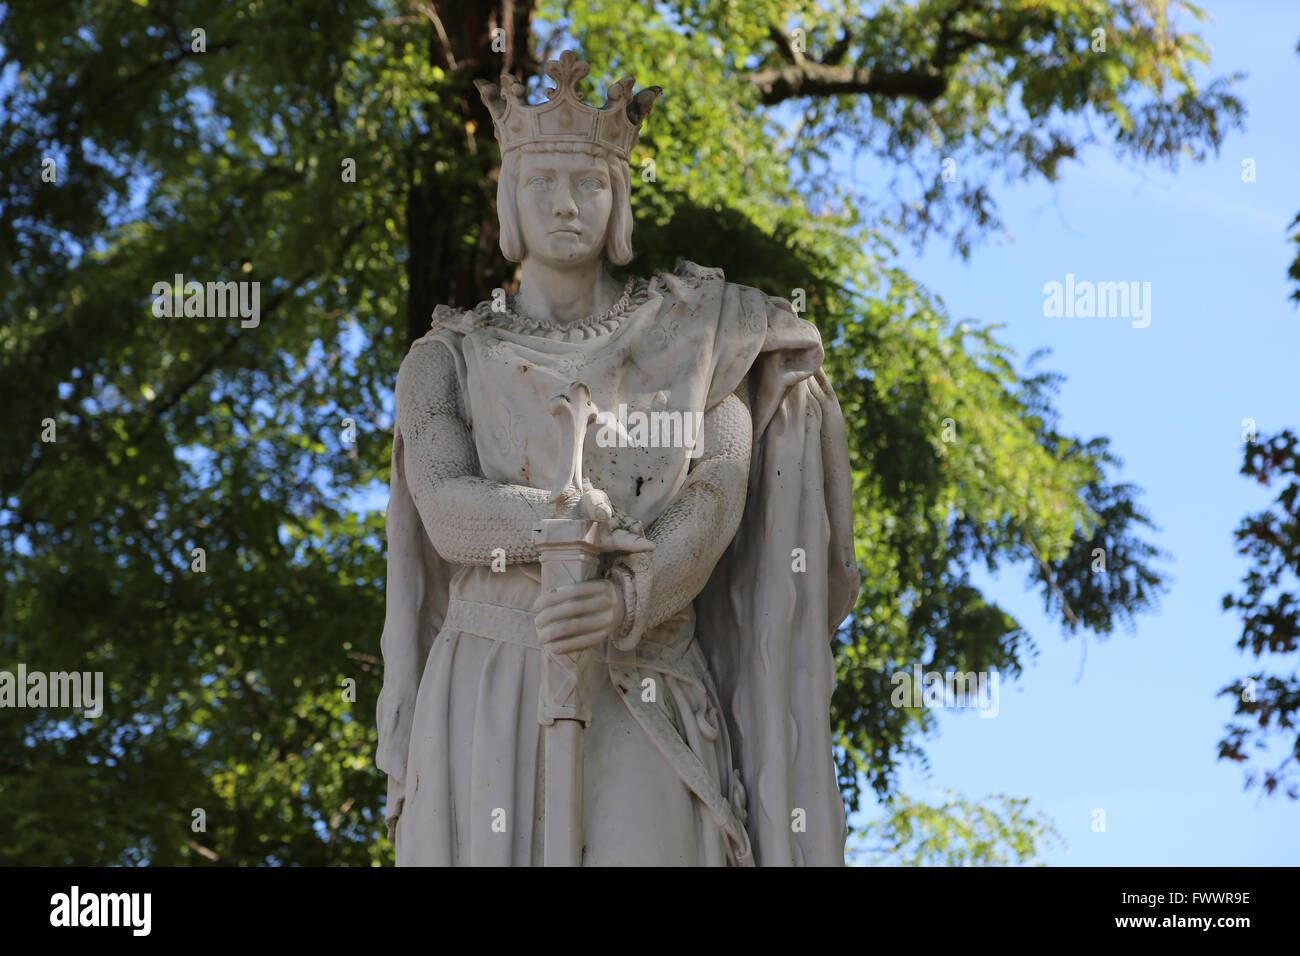 Statue von Saint Louis oder Ludwig IX. (1214-1270). König von Frankreich.  Vincennes. Frankreich. Vom Bildhauer A. Mony, 1906. Stockfoto